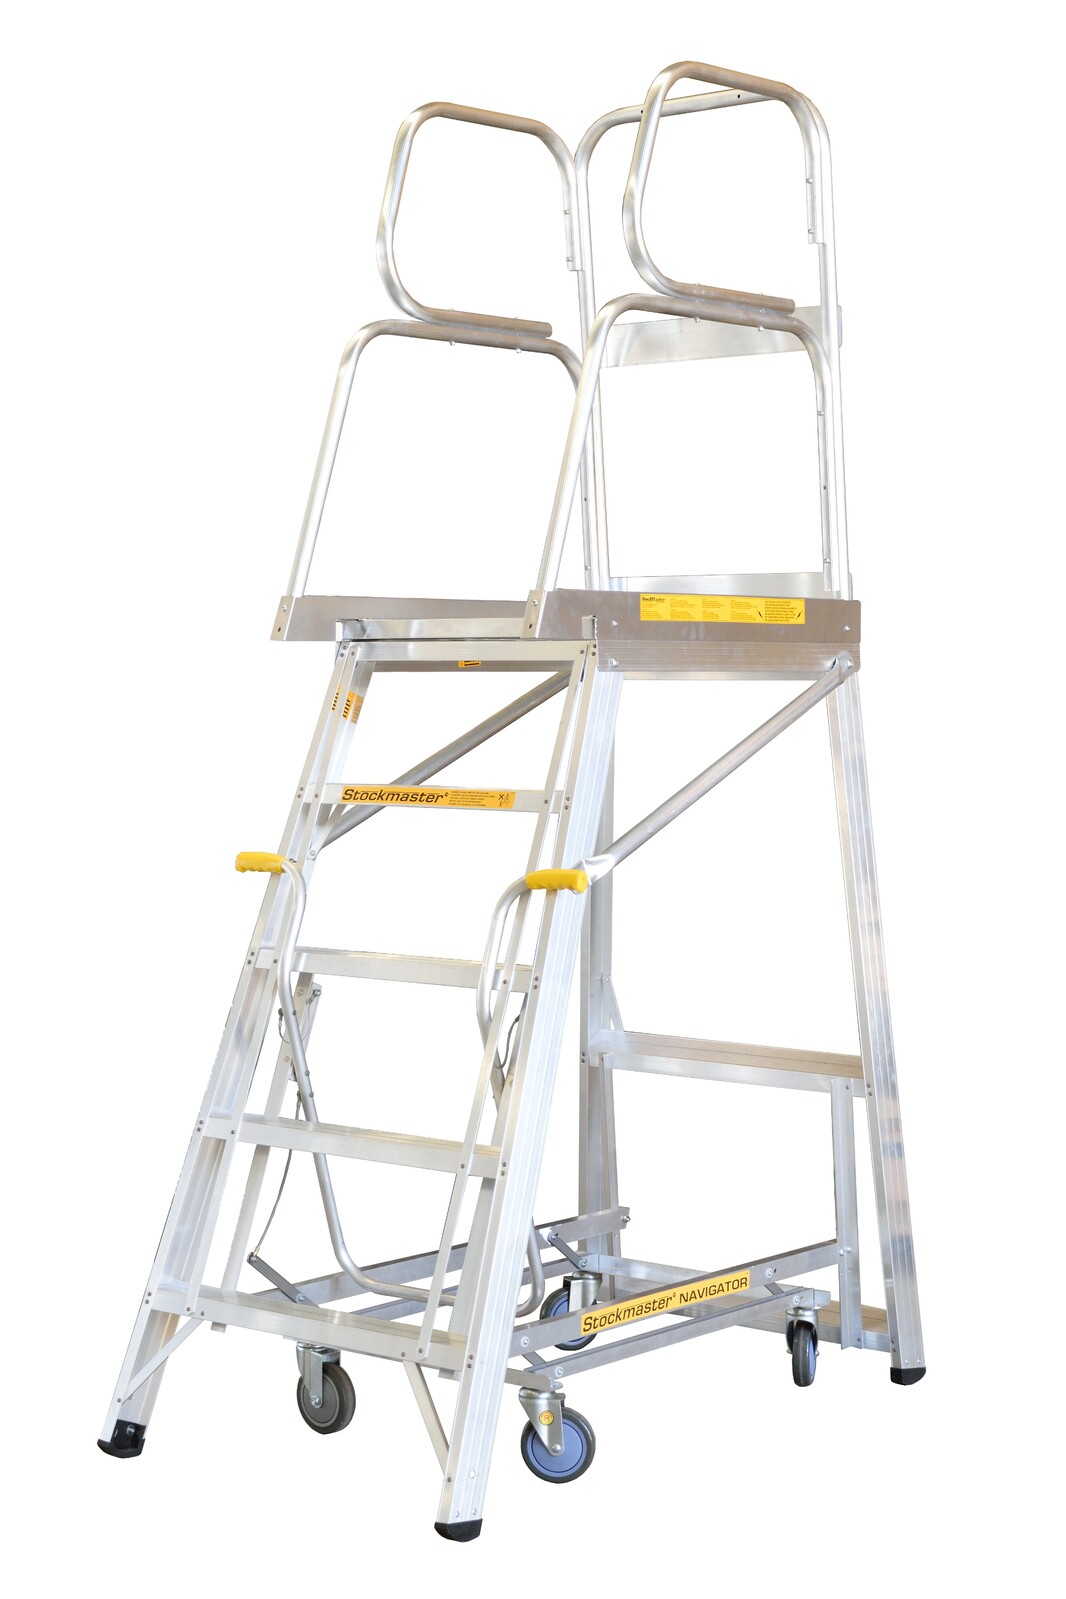 Stockmaster 150kg Rated Mobile Work Platform Ladder Navigator - 2.8m